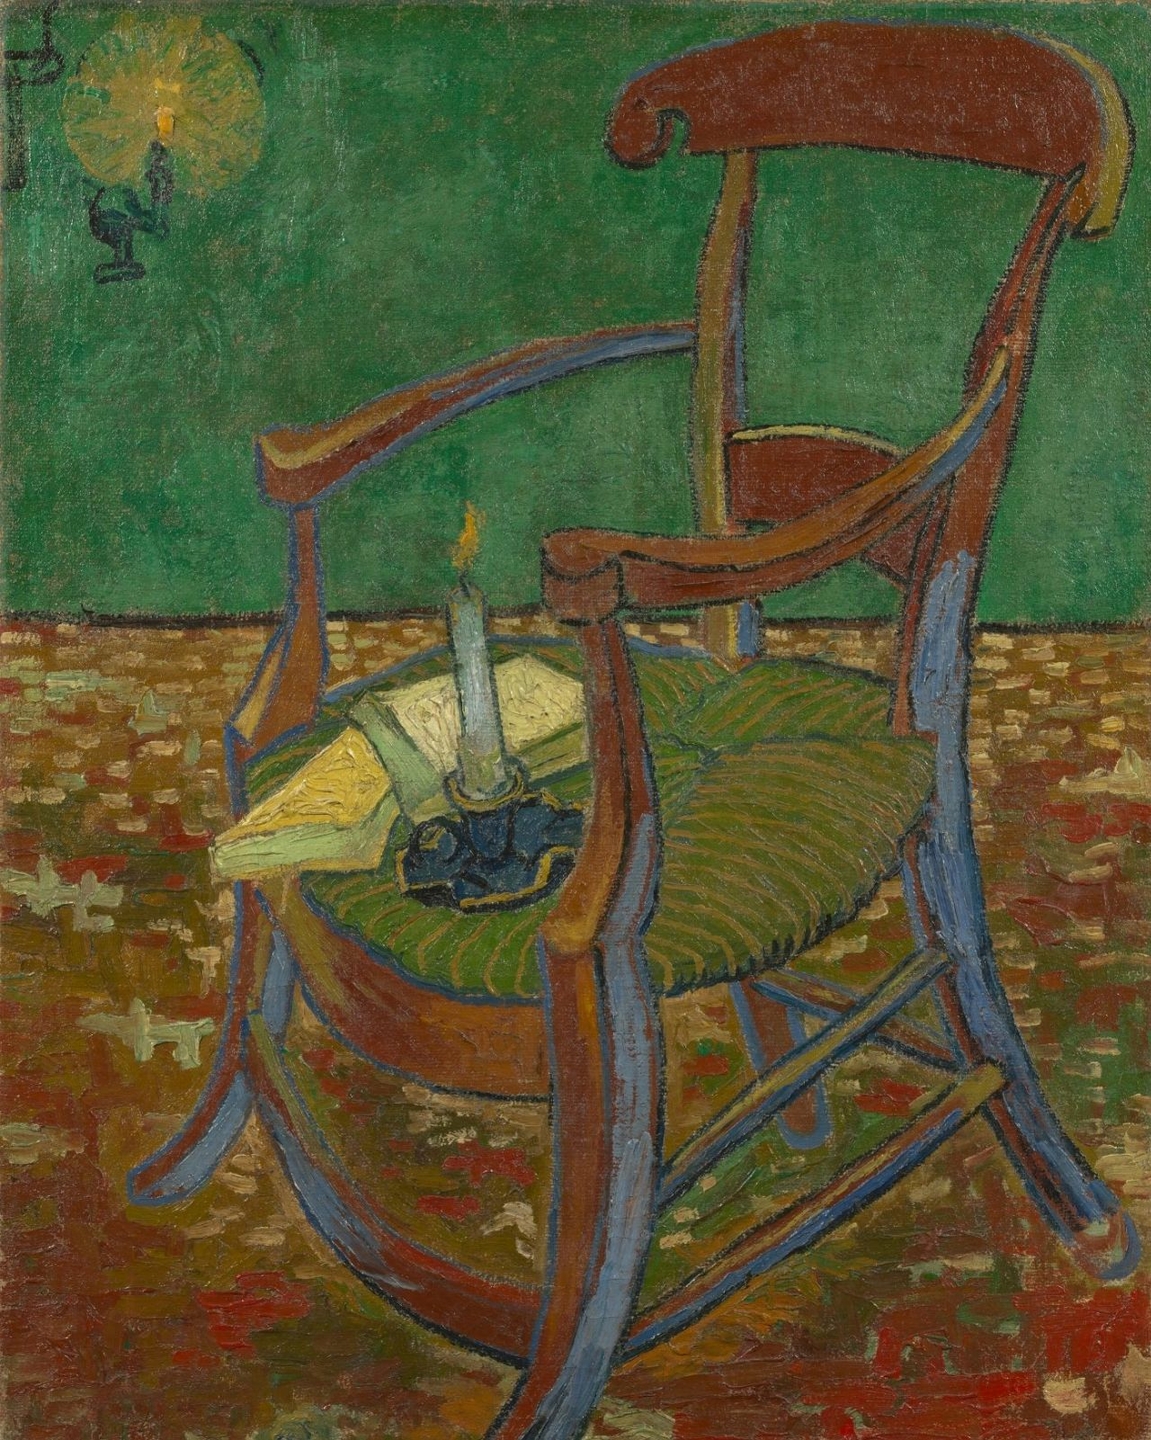 Did Van Gogh find himself mad?